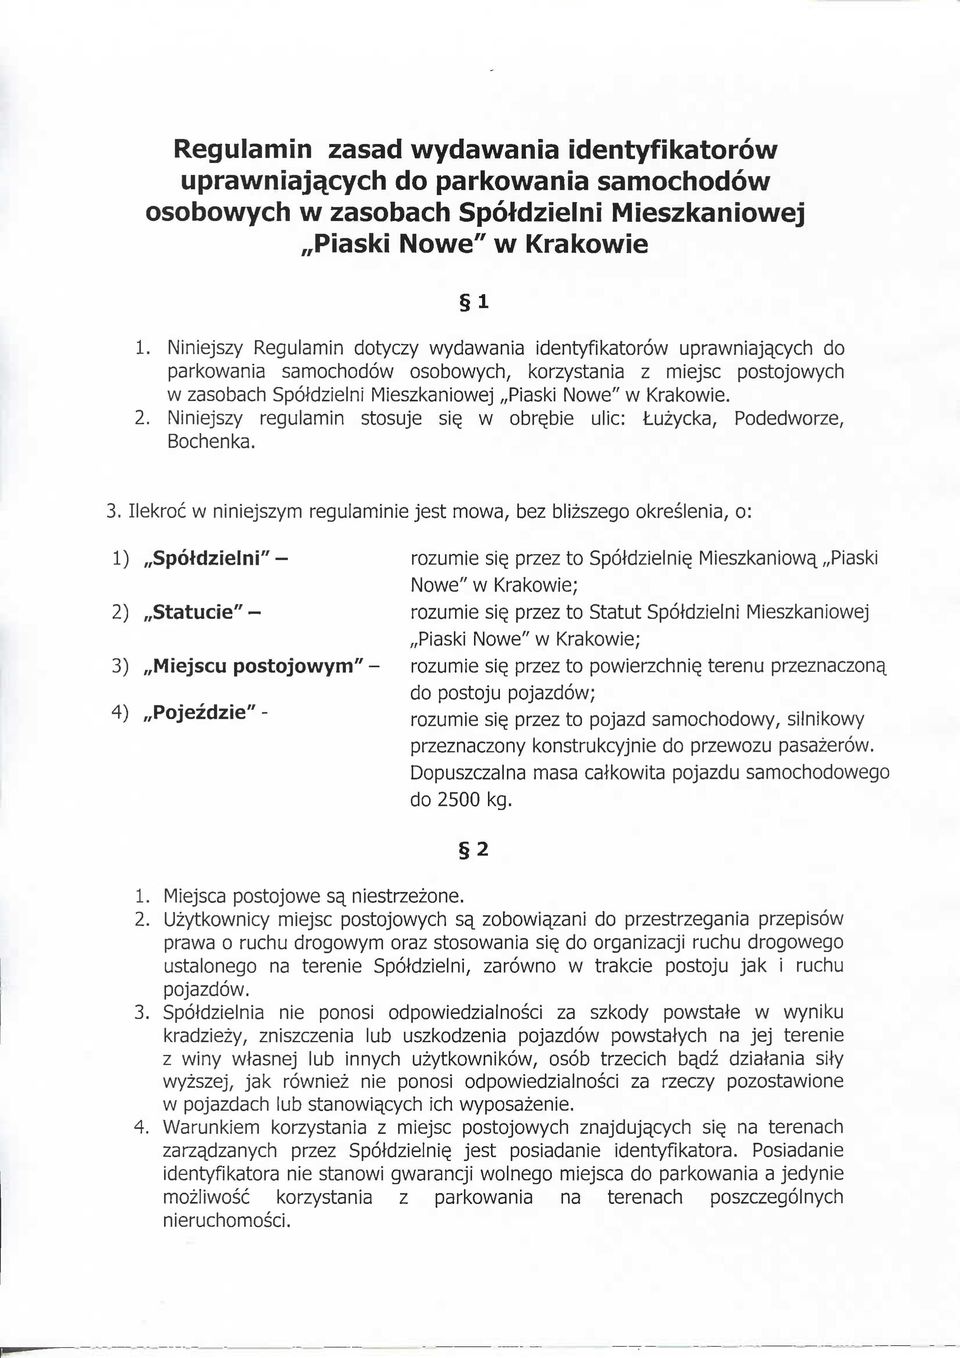 2. Niniejszy regulamin stosuje s\q w obr^bie ulic: Luzycka, Podedworze, Bochenka. 3.